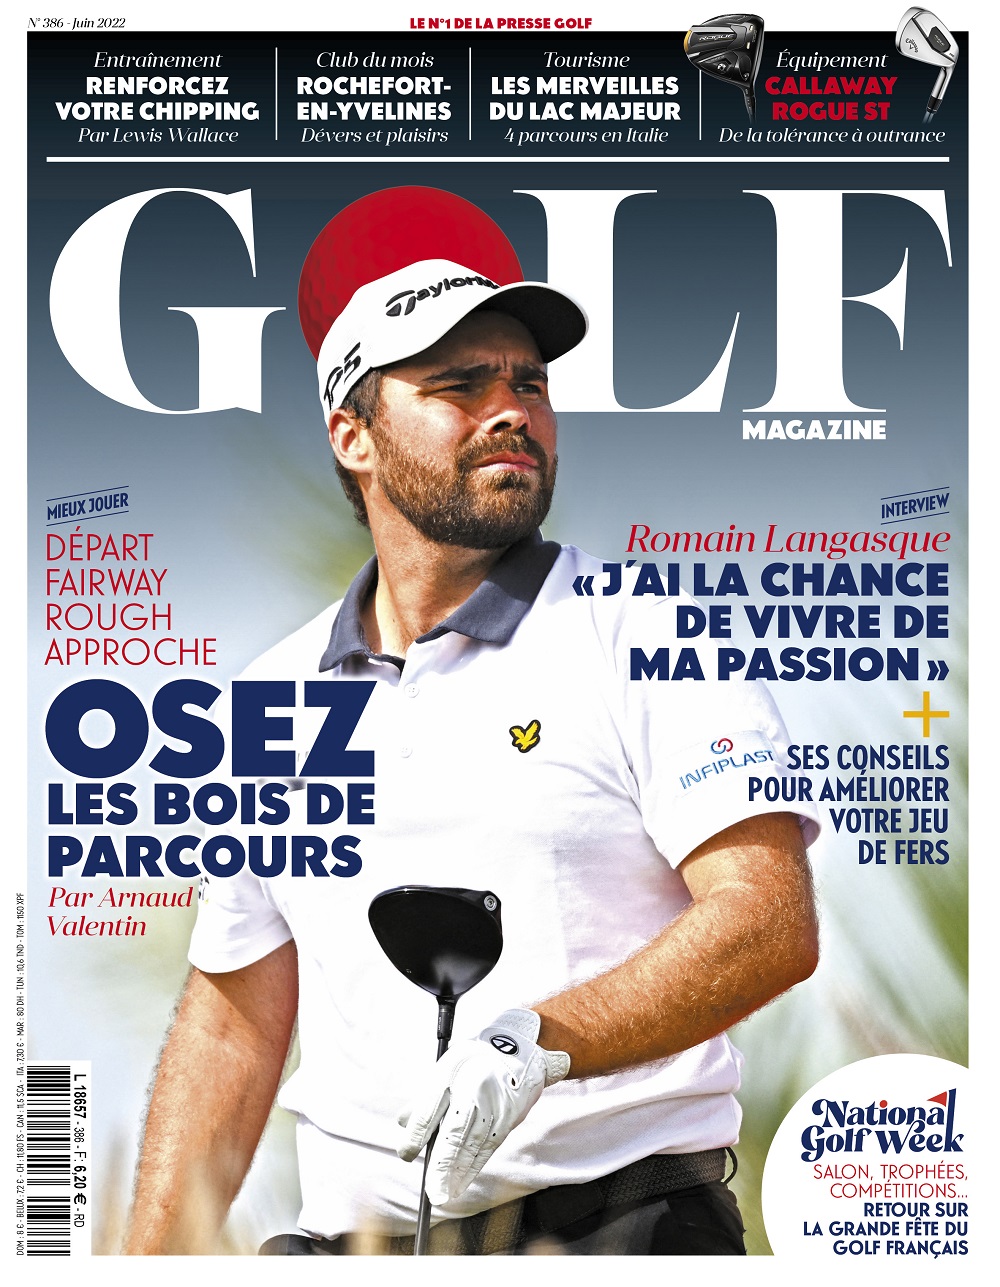 Le Golf Magazine n°386 est en kiosque !